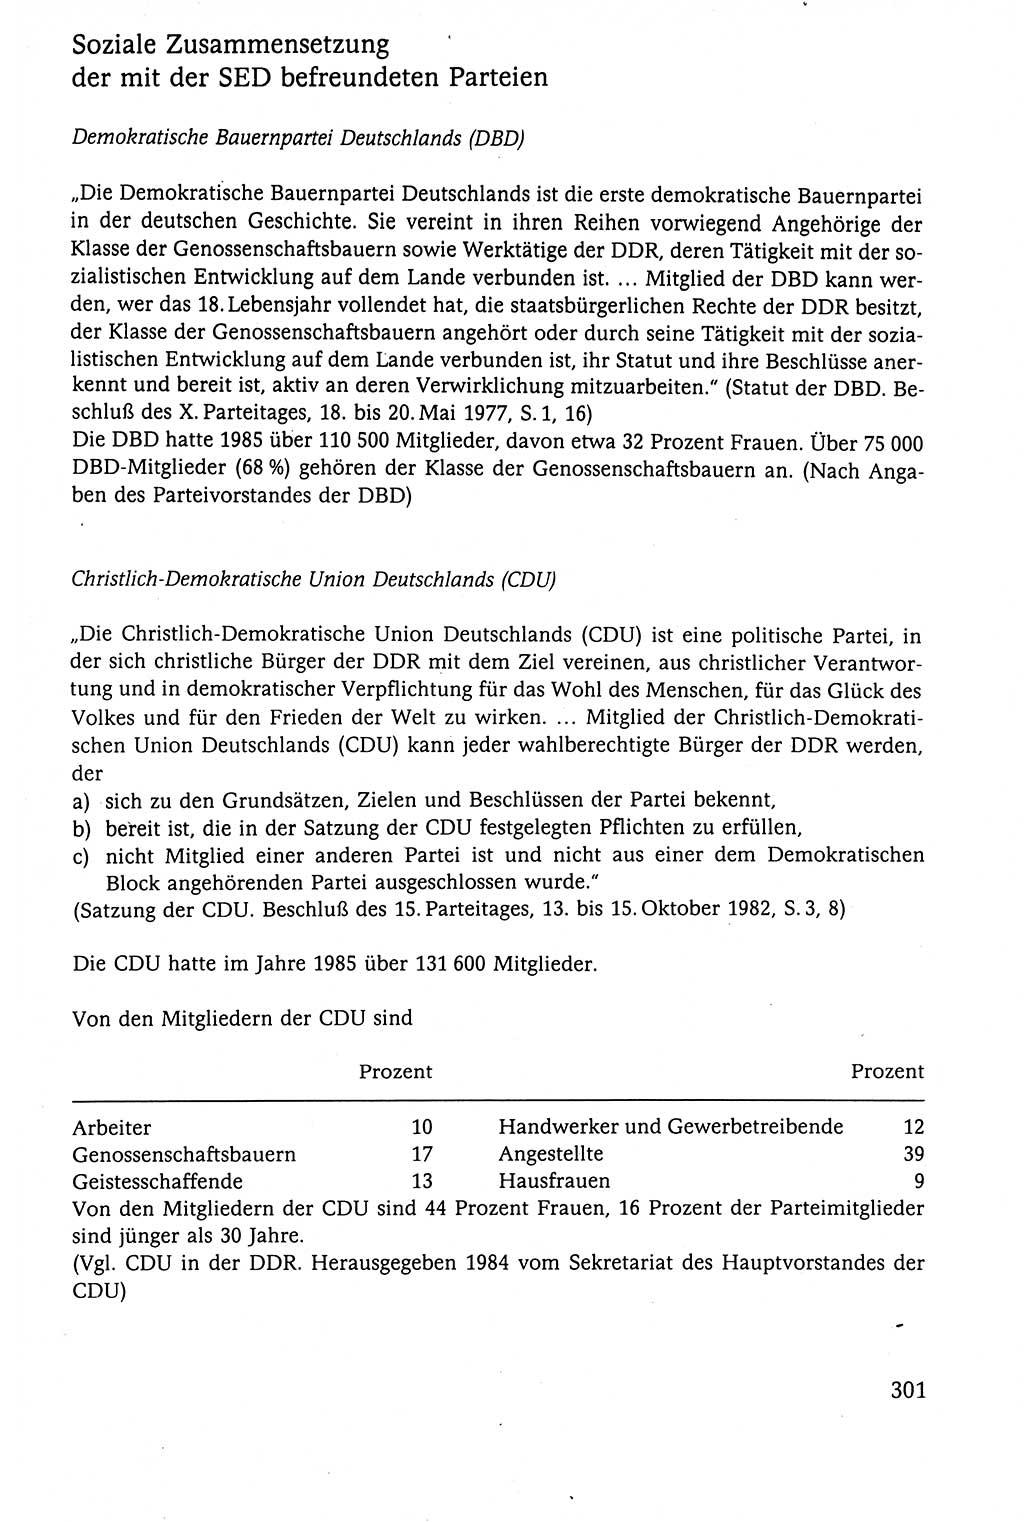 Der Staat im politischen System der DDR (Deutsche Demokratische Republik) 1986, Seite 301 (St. pol. Sys. DDR 1986, S. 301)